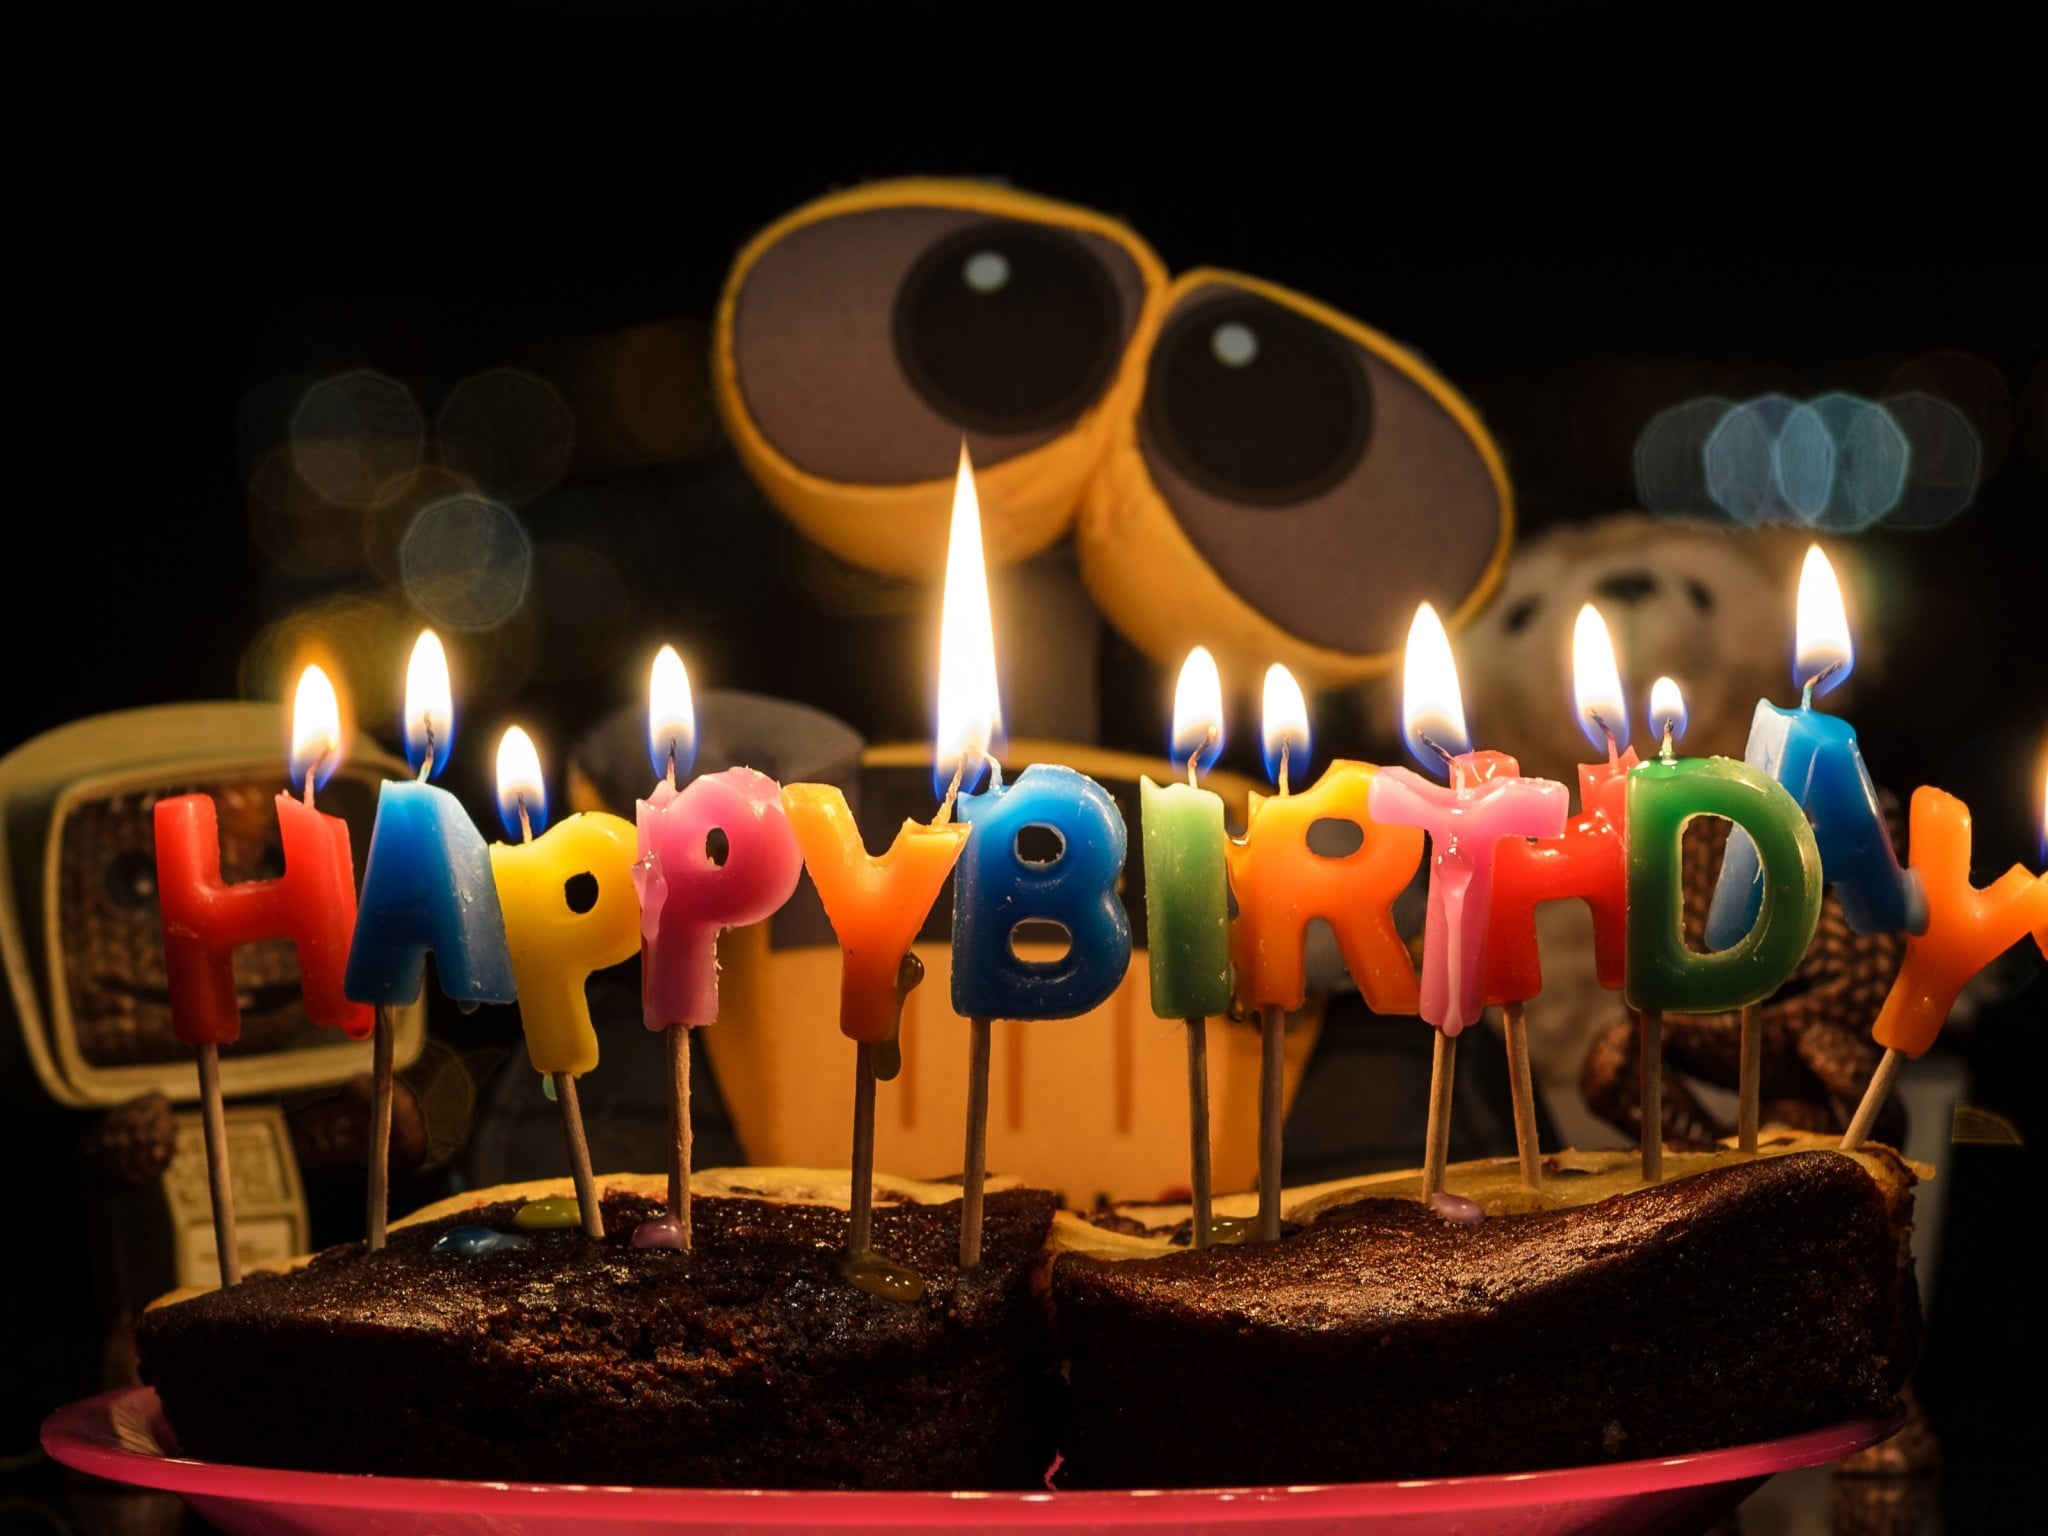 جشن تولد – در مورد کیک تولد و شمع و آهنگ تولد چه اطلاعاتی داریم؟